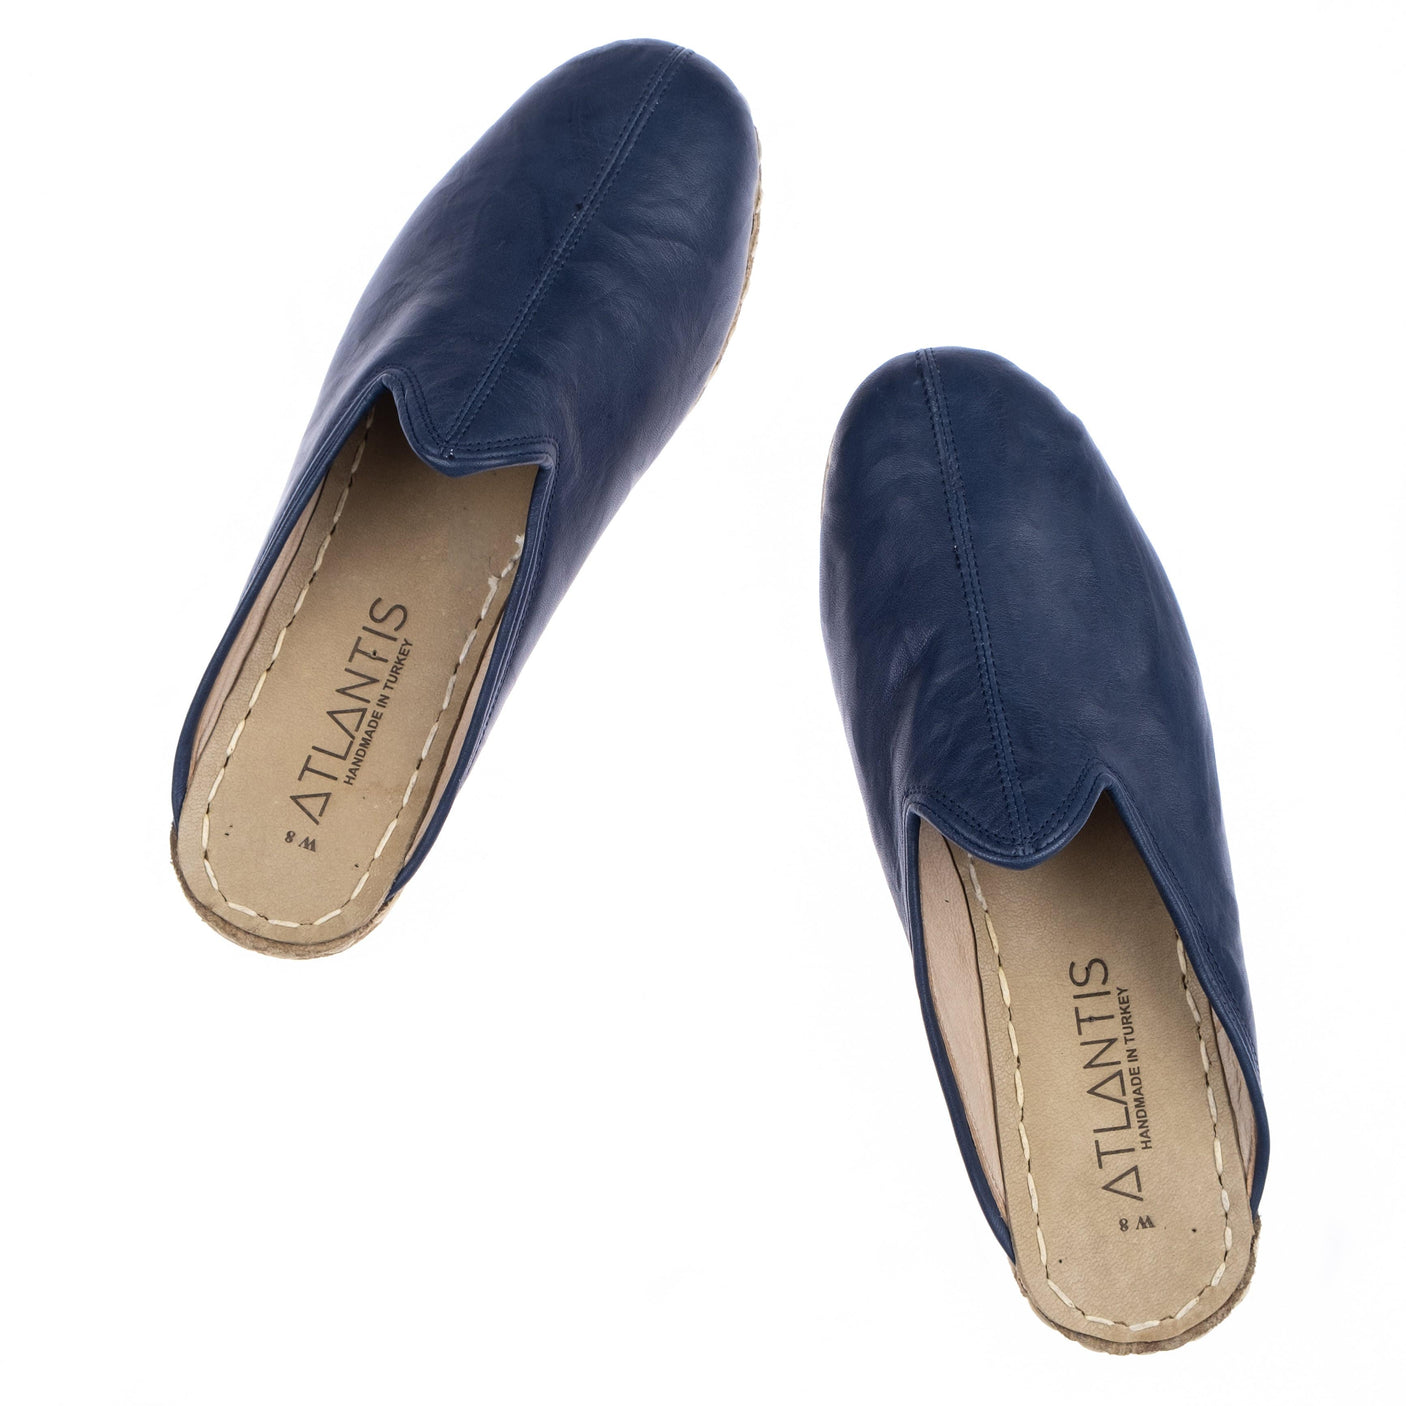 Navy Slippers - Turkish Slippers for Women & Men : Atlantis Handmade Shoes